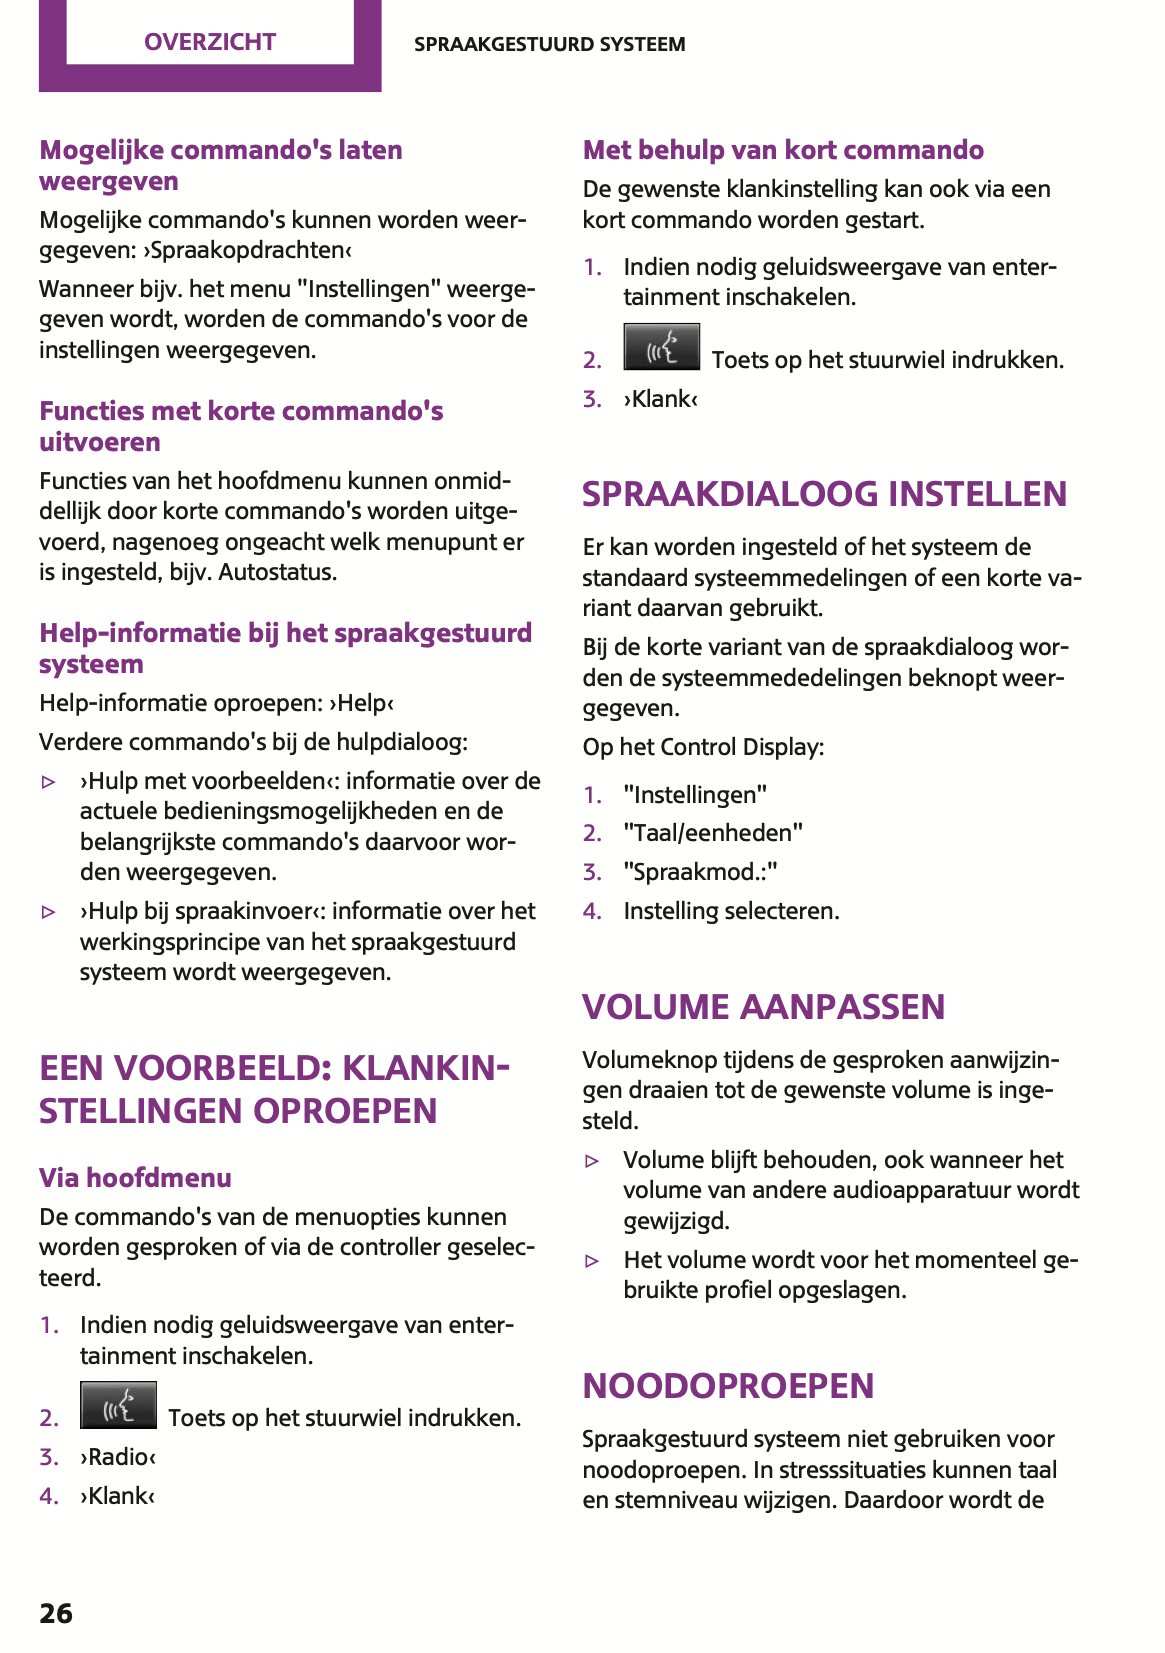 2015 Mini Cooper Owner's Manual | Dutch